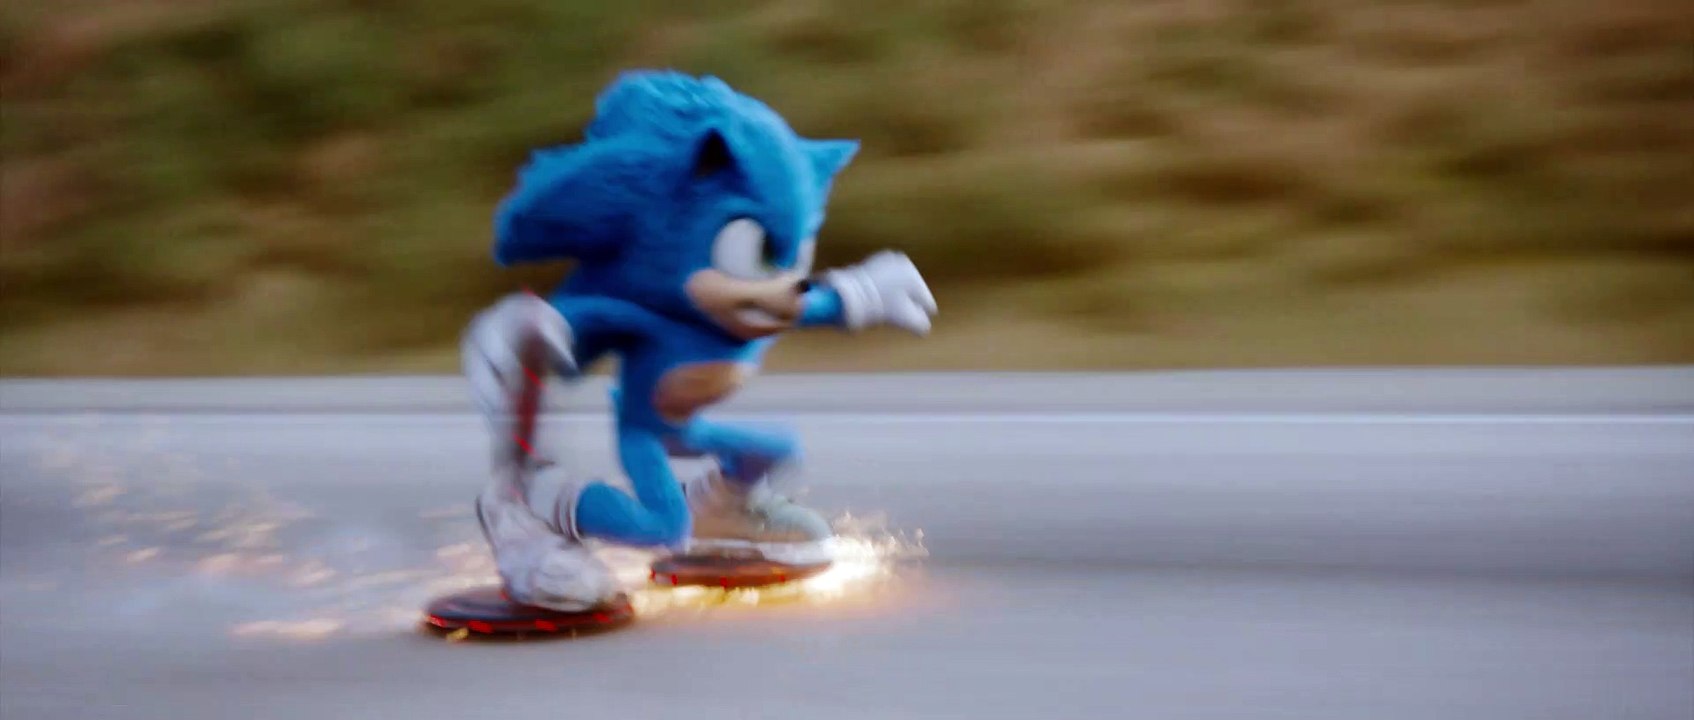 Sonic The Hedgehog: Sonic zerstört Roboter